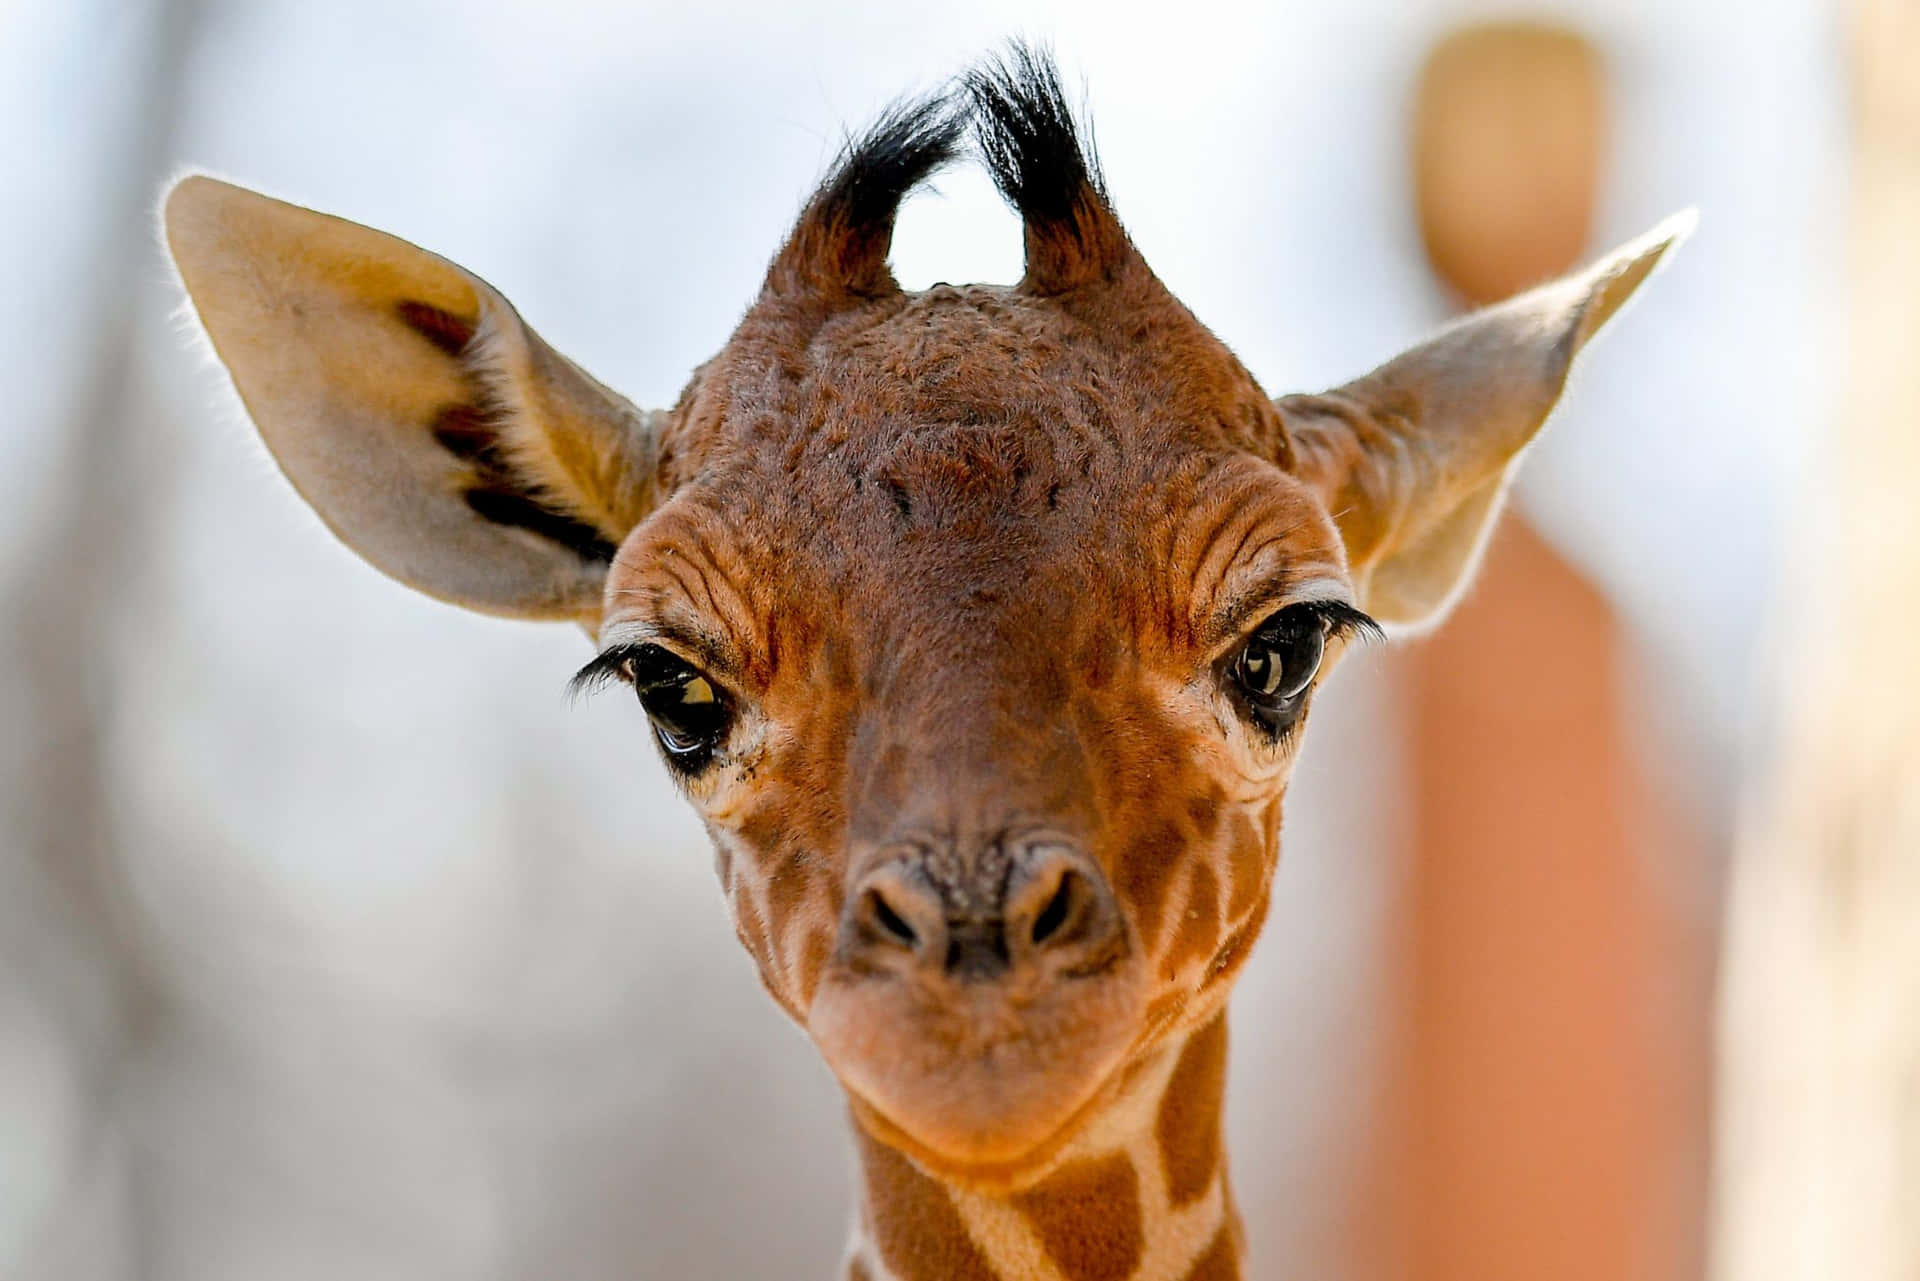 Cute Giraffe Smiling Close-up Picture